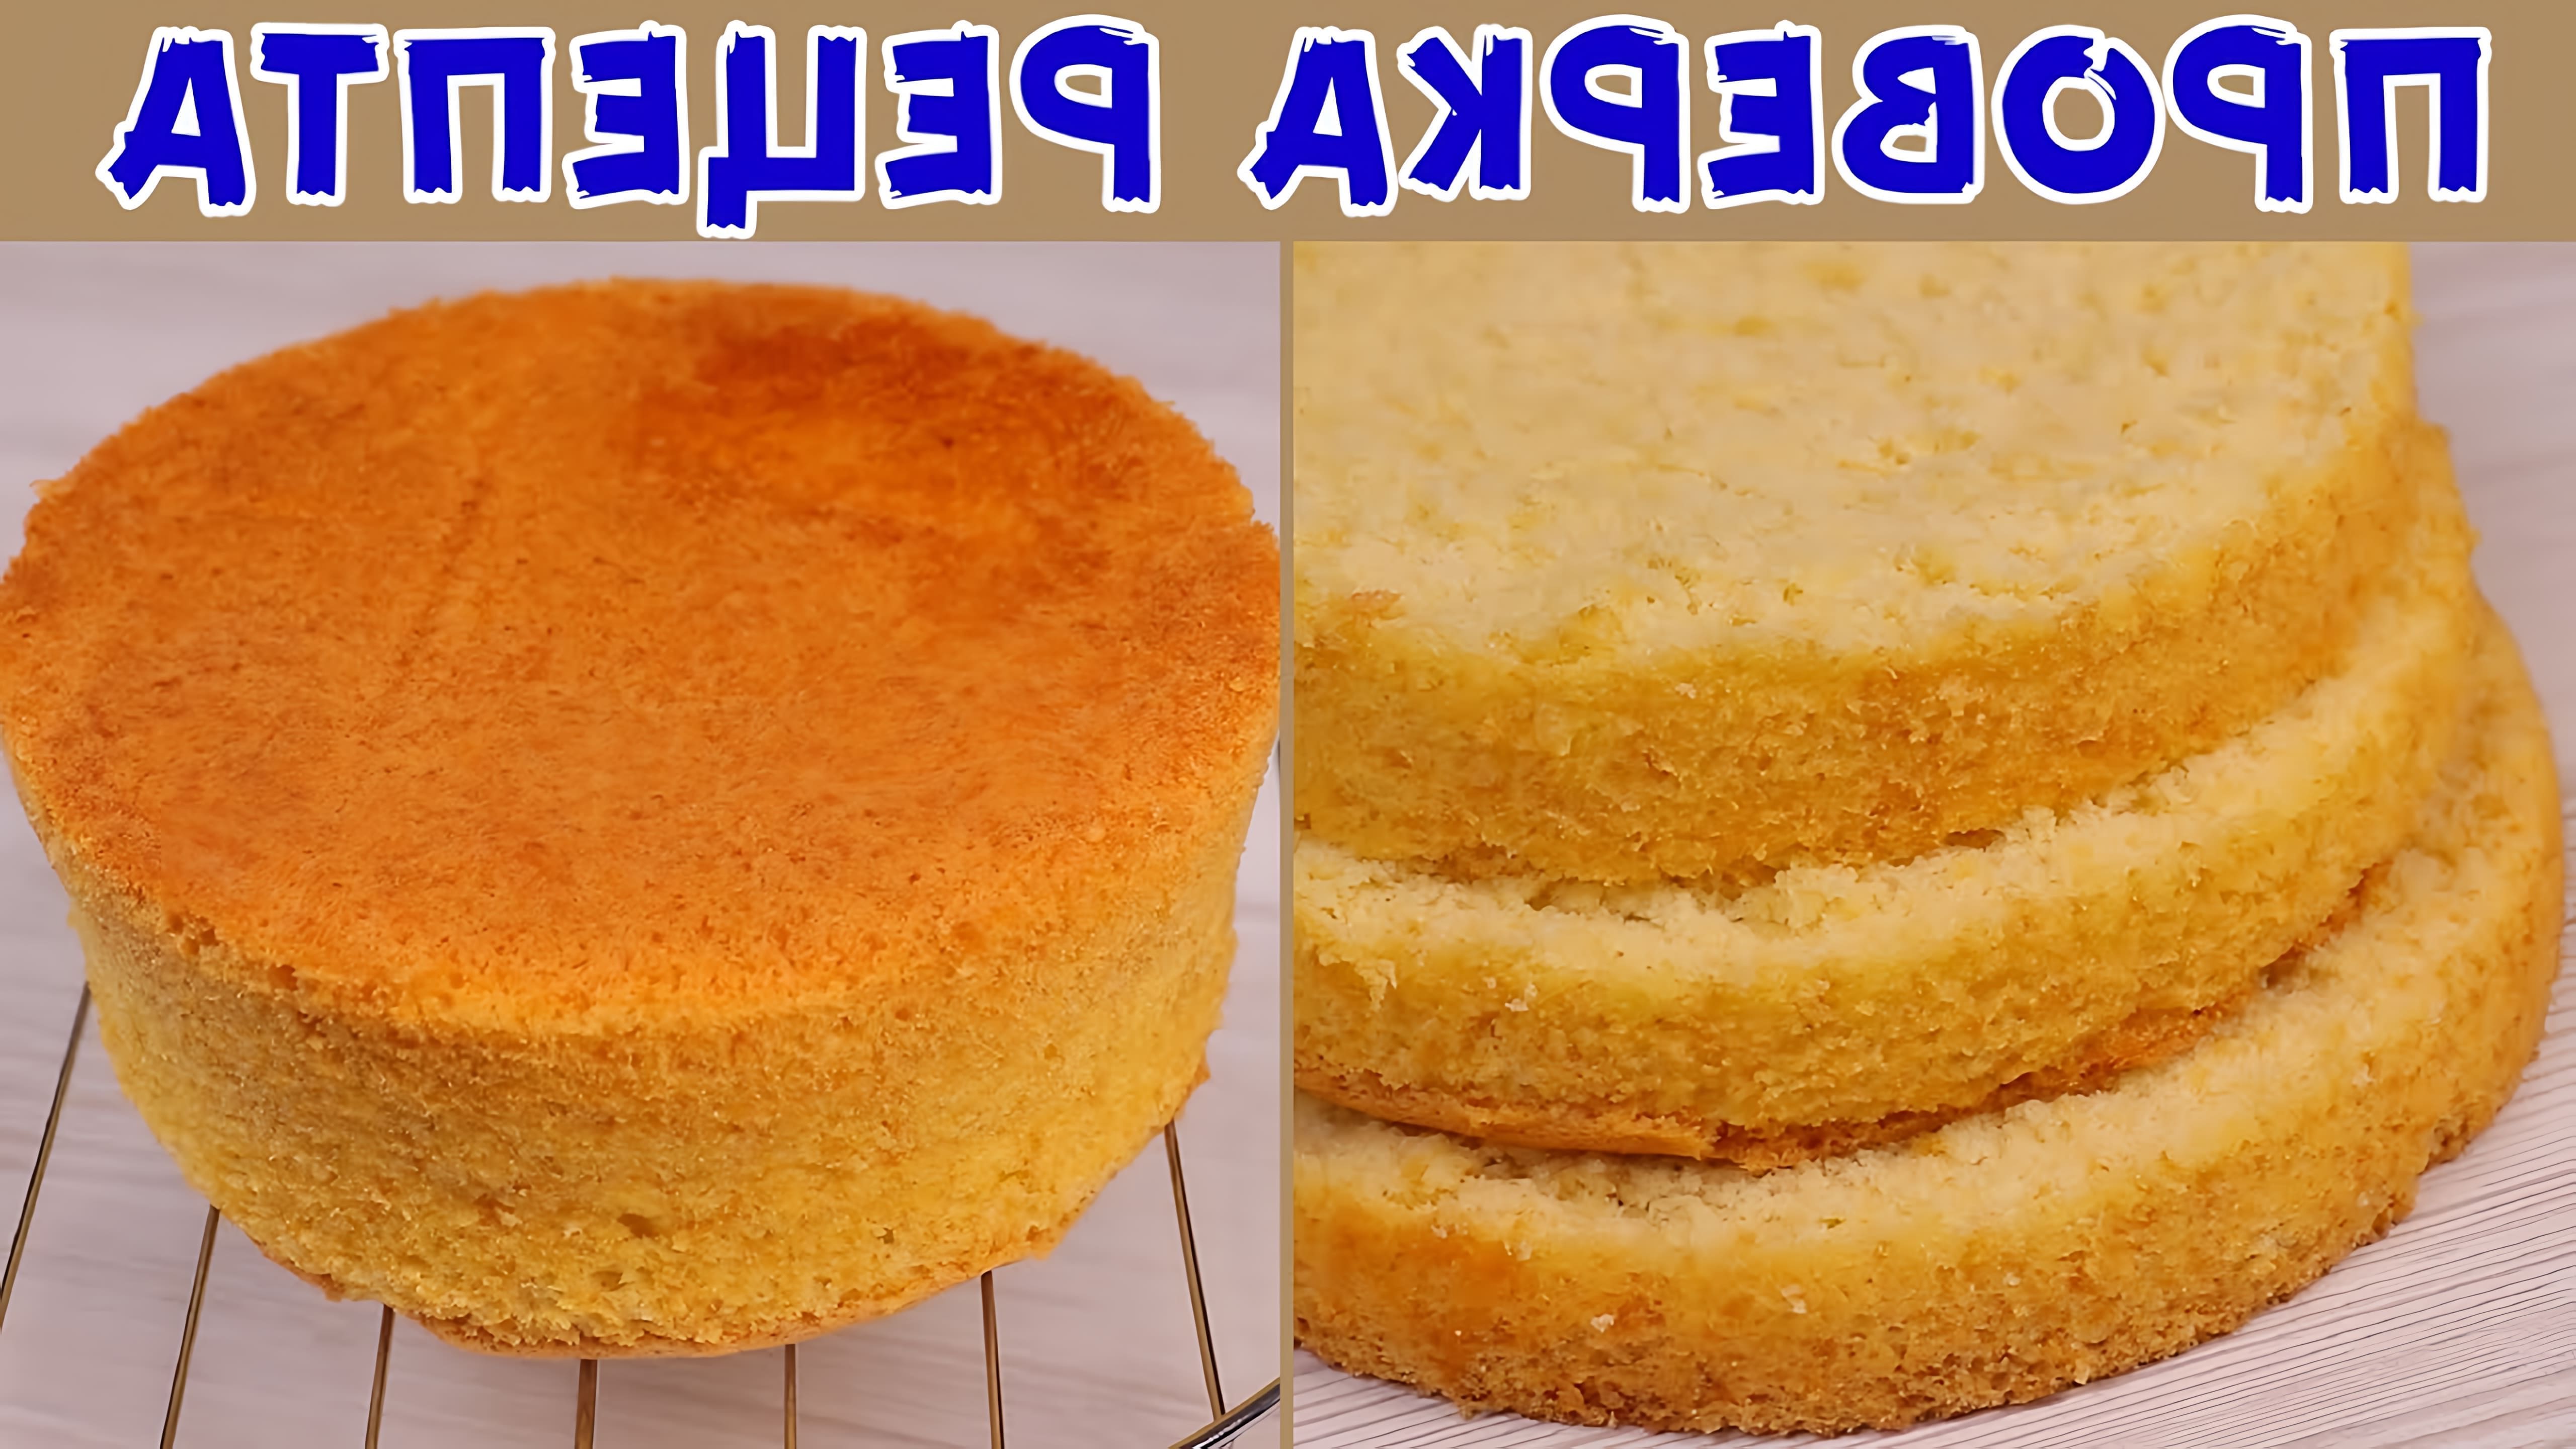 В этом видео демонстрируется рецепт приготовления ванильного бисквита на кипятке